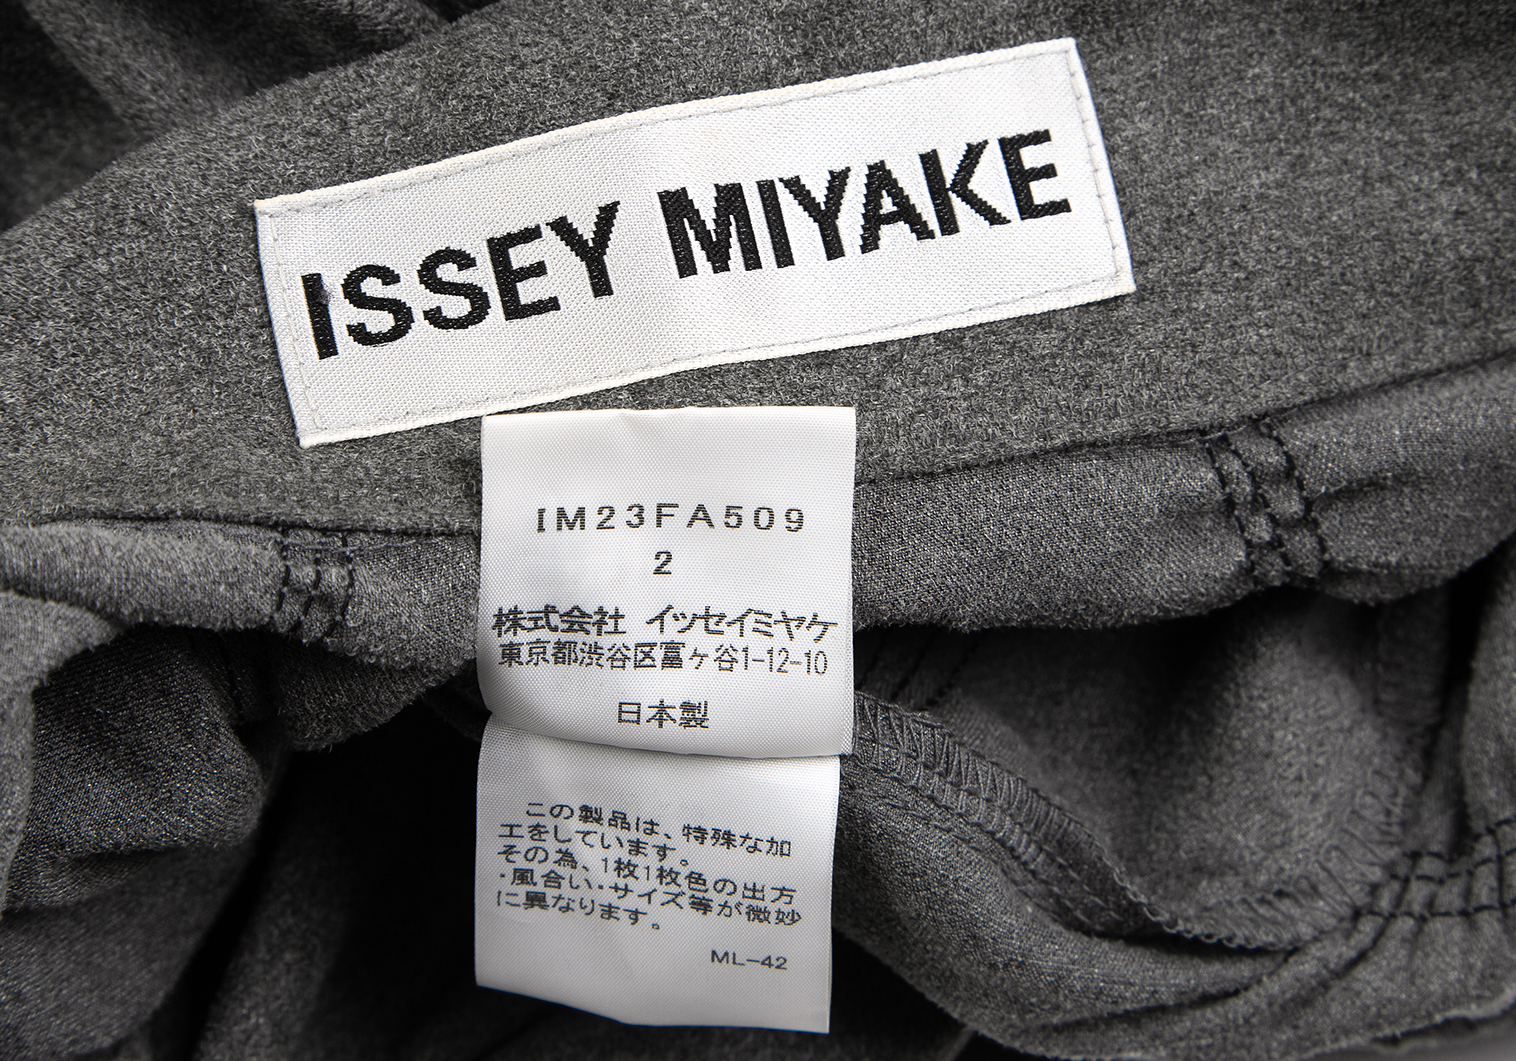 イッセイミヤケISSEY MIYAKE ポリギャザーデザインロングジャケット